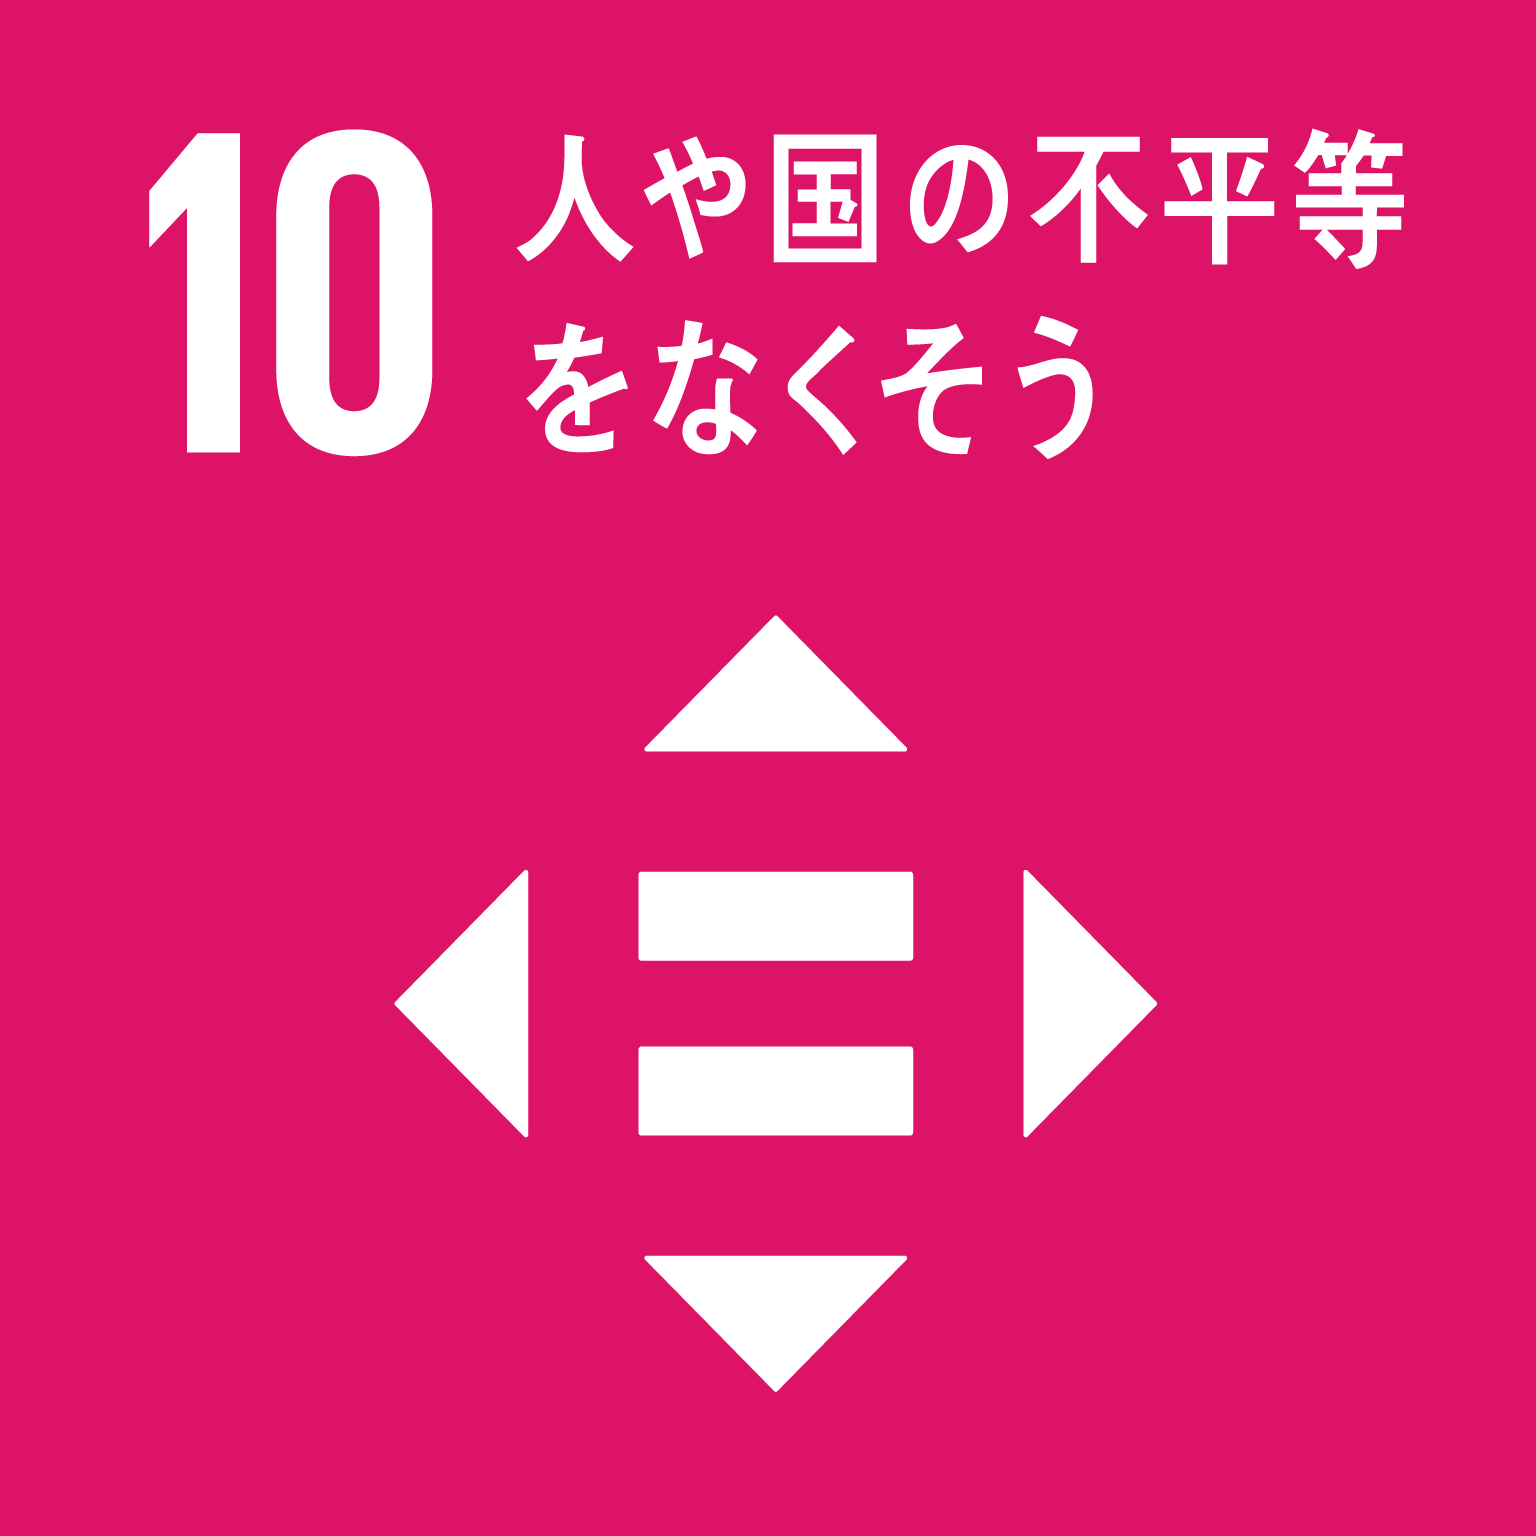 「10.人や国の不平等をなくそう」の文字と目標10のロゴ